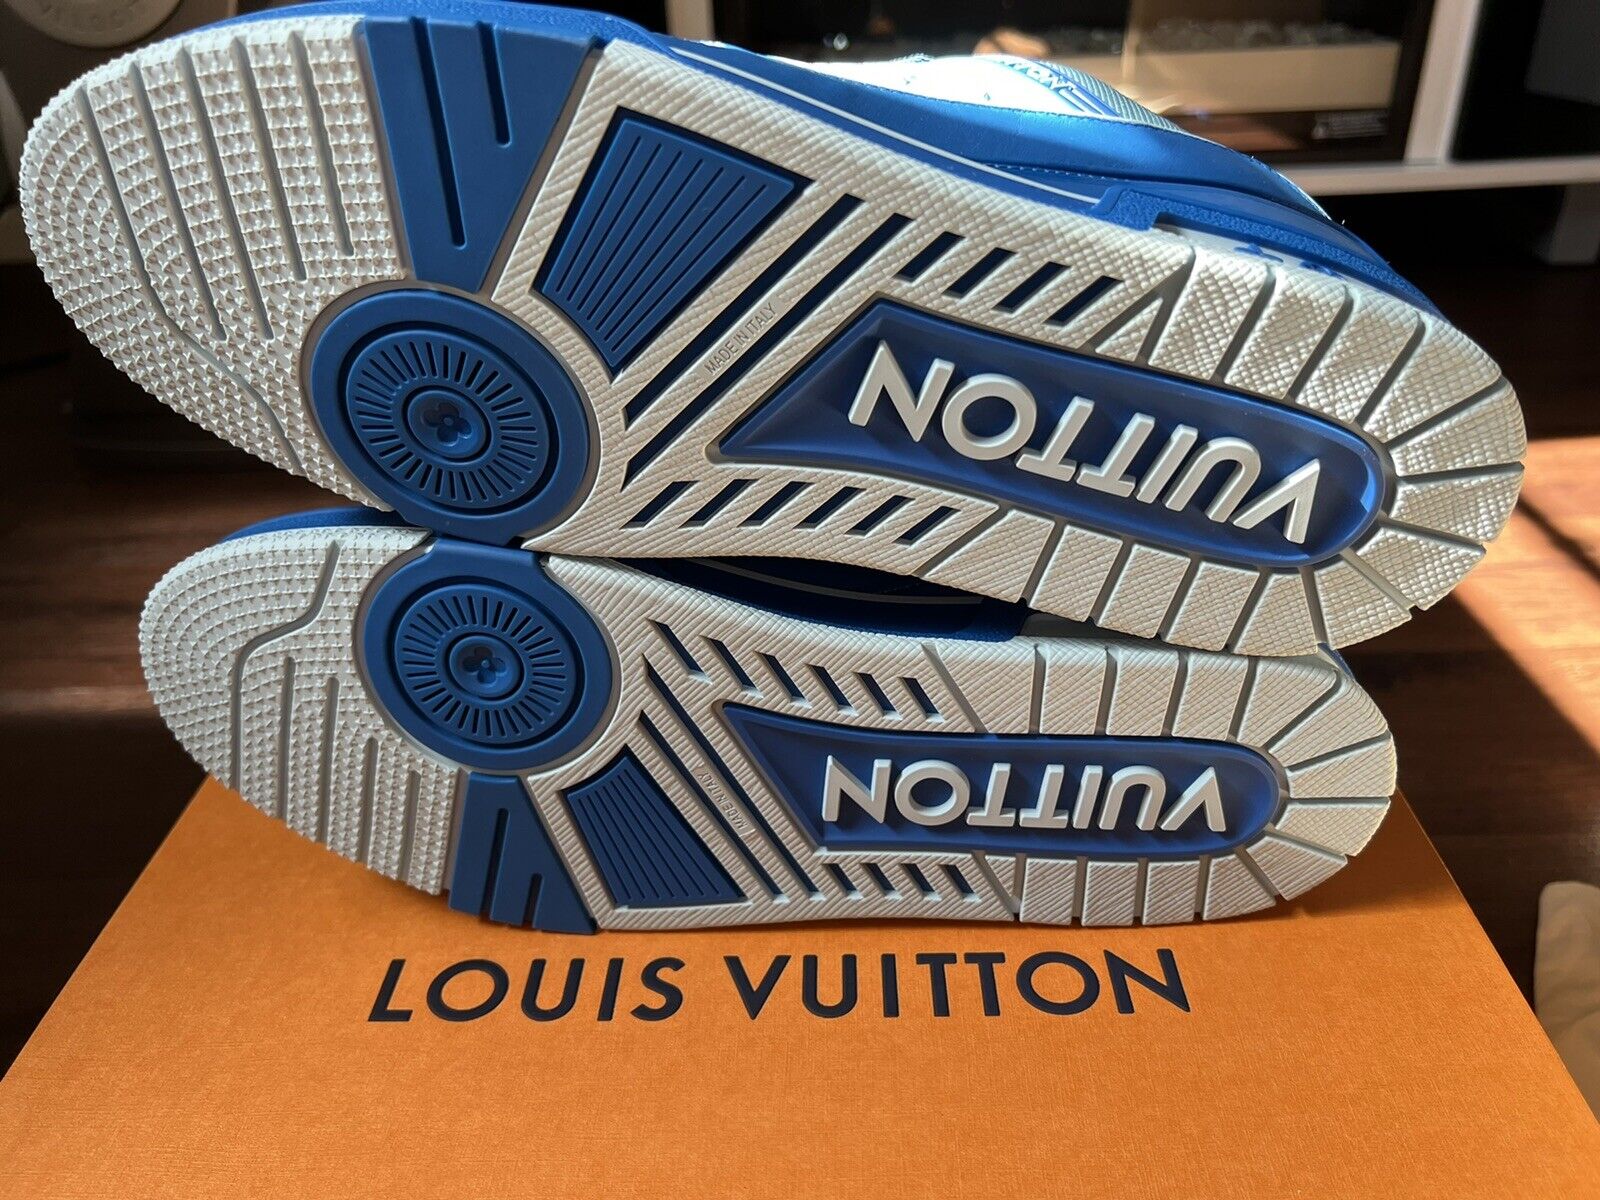 New Louis Vuitton Trainer University Blue by Virgil Abloh